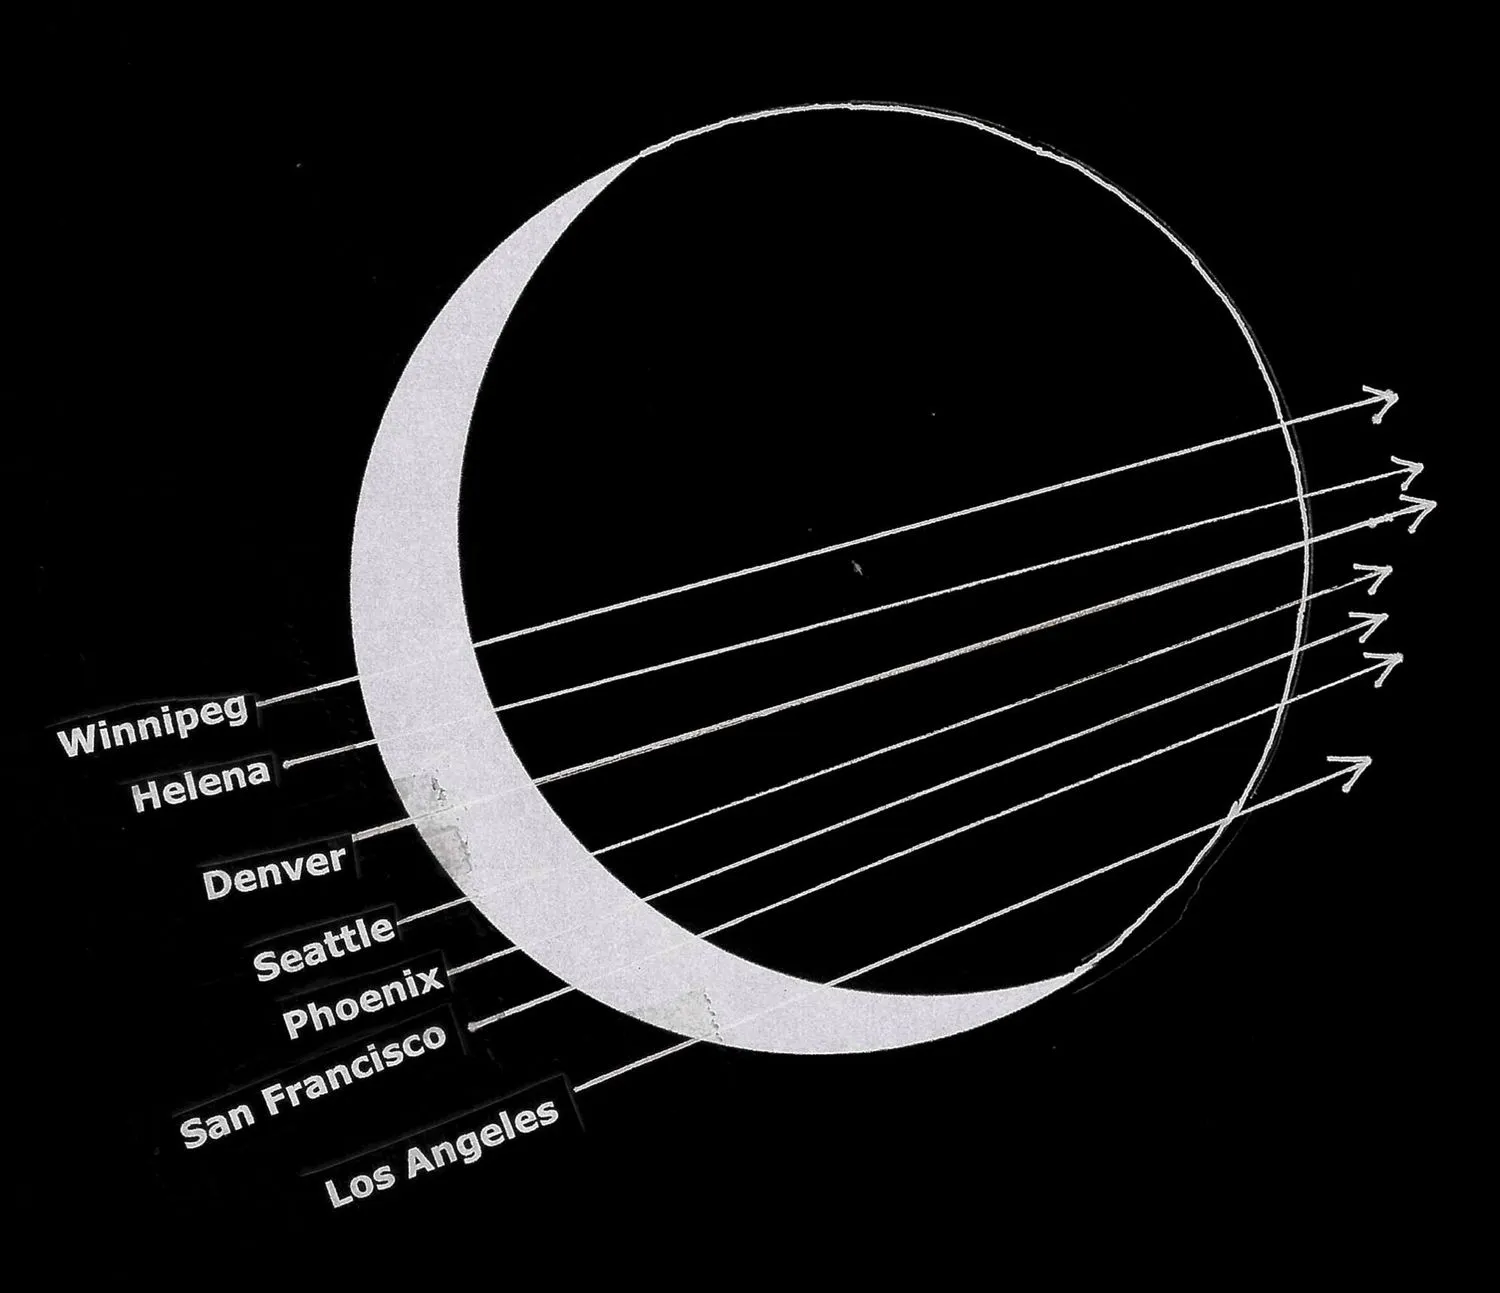 sieben Linien zeigen, wann ein Stern von sieben verschiedenen Städten aus hinter dem Mond verschwindet und wieder auftaucht